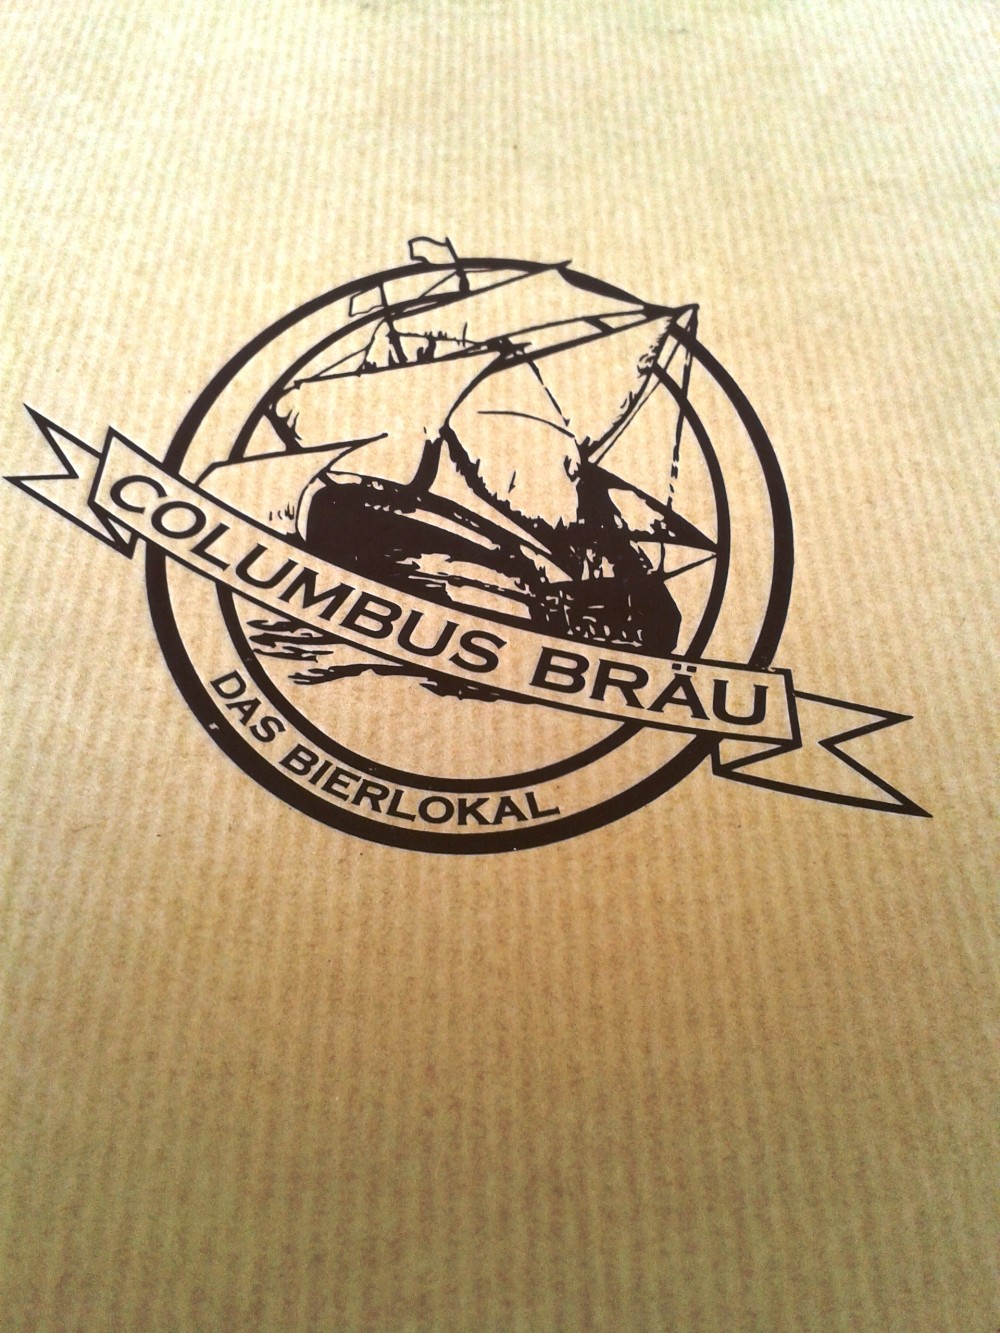 Columbusbräu - Speisekarte - Columbus Bräu - Wien